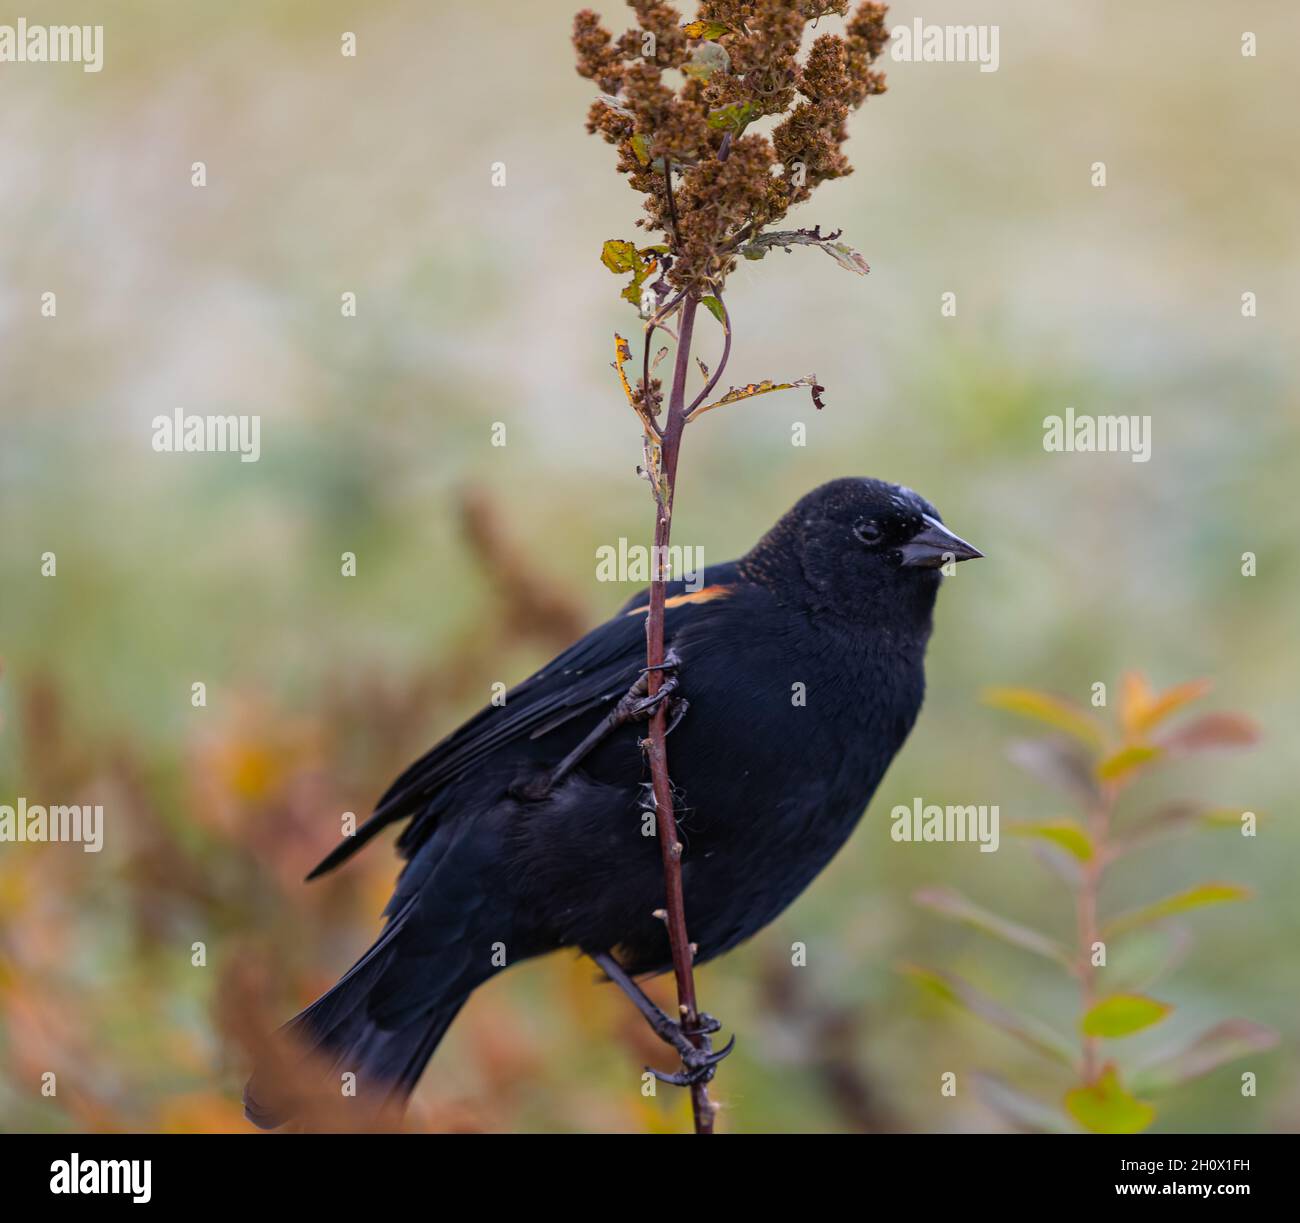 El pájaro negro de alas rojas se sienta en la rama de una planta. Temporada de otoño. Vista de la calle, foto de viaje, ornitología de la foto del concepto Foto de stock